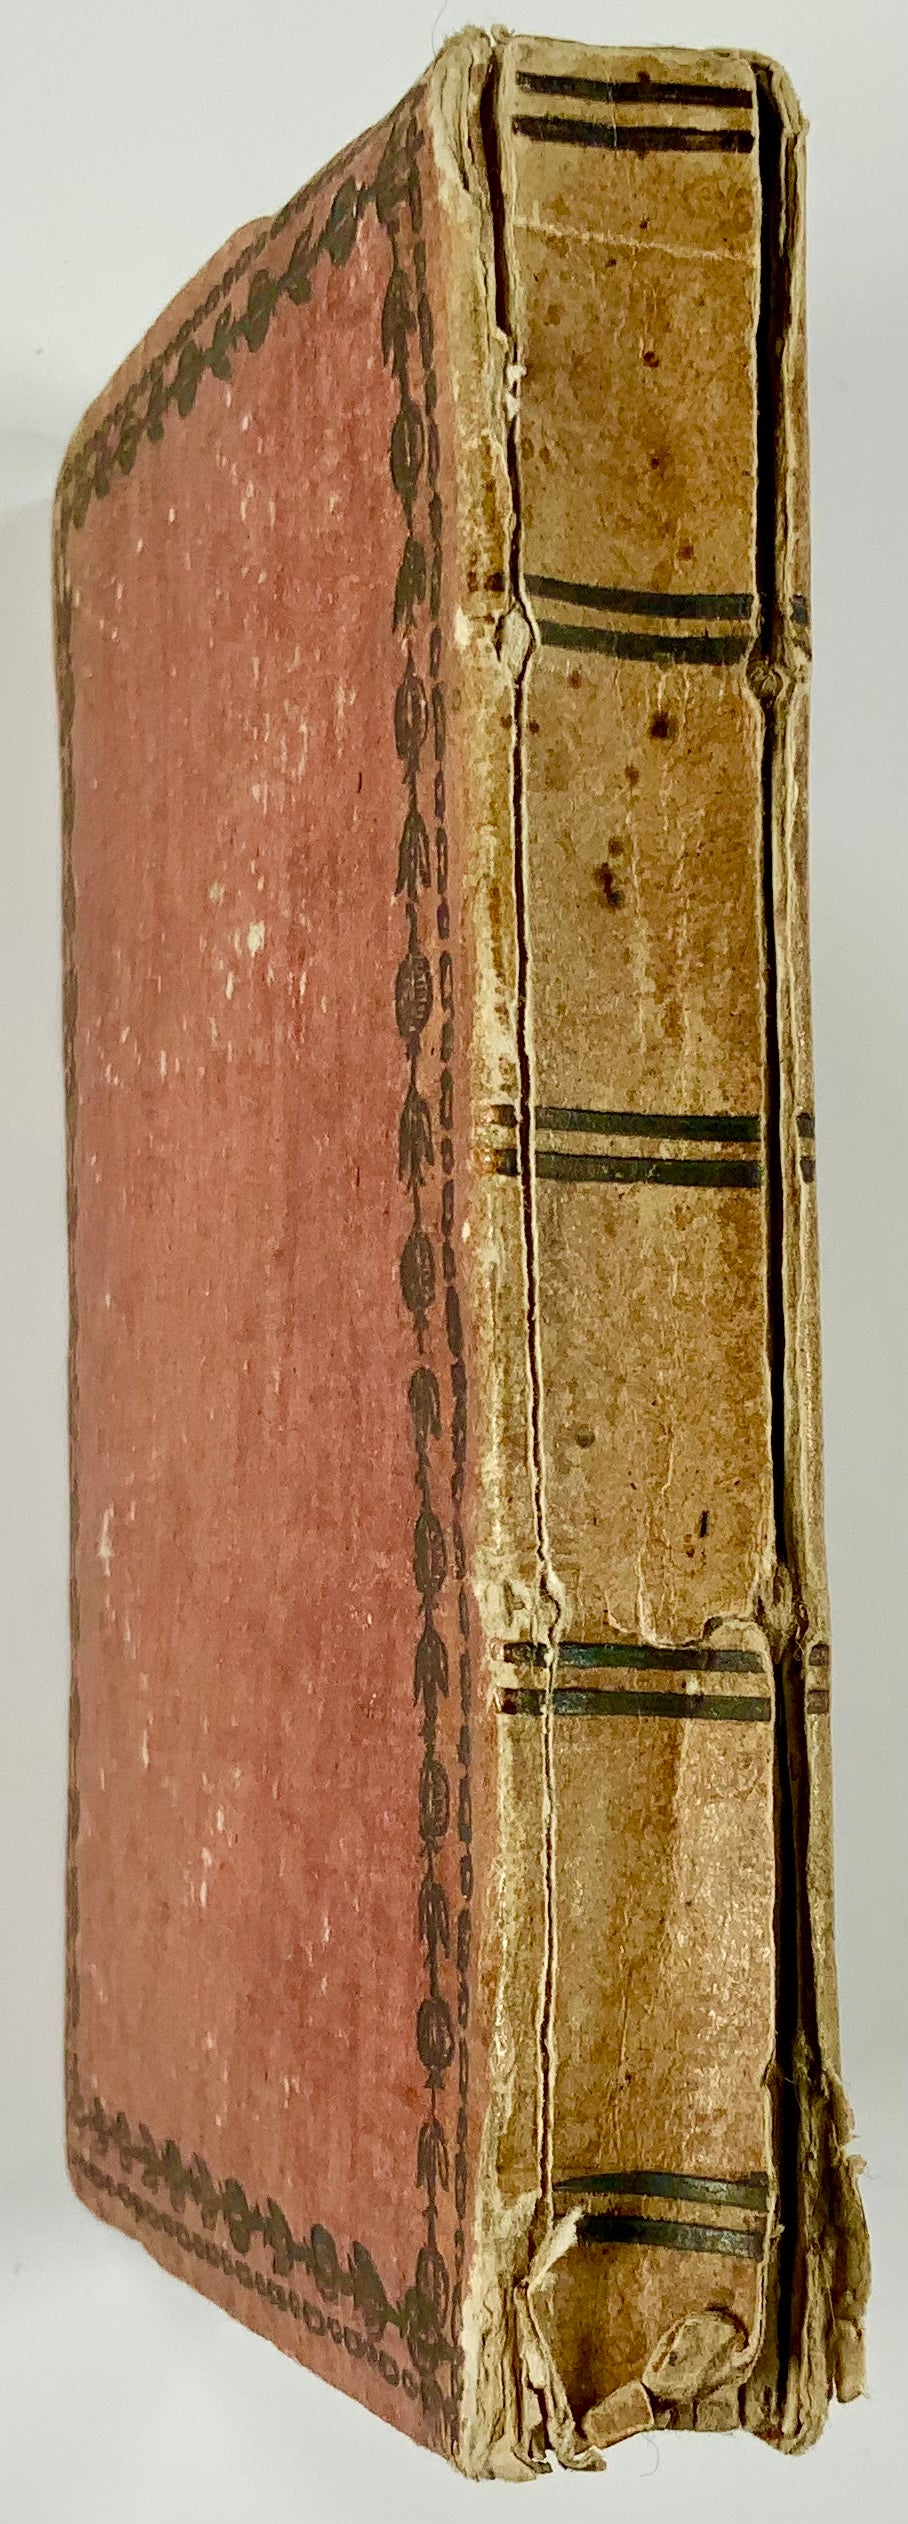 1814 Astronomical Almanac, Palmaverde, Il Corso delle Stelle, woodcuts